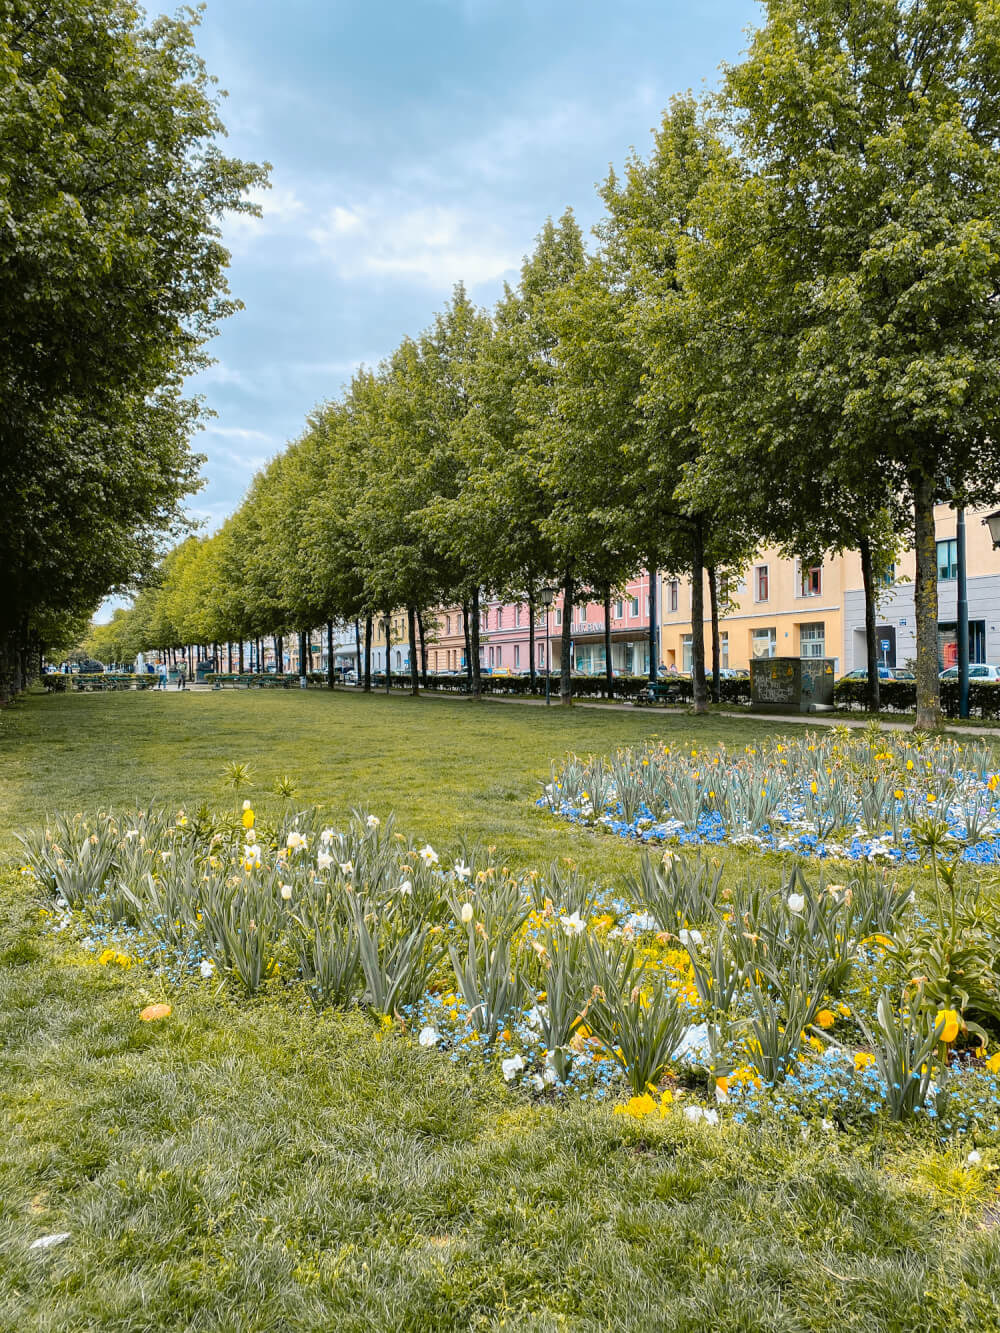 DIY Haidhausen Walking Tour: A Self-Guided Walk Through One of Munich's Prettiest Neighbourhoods